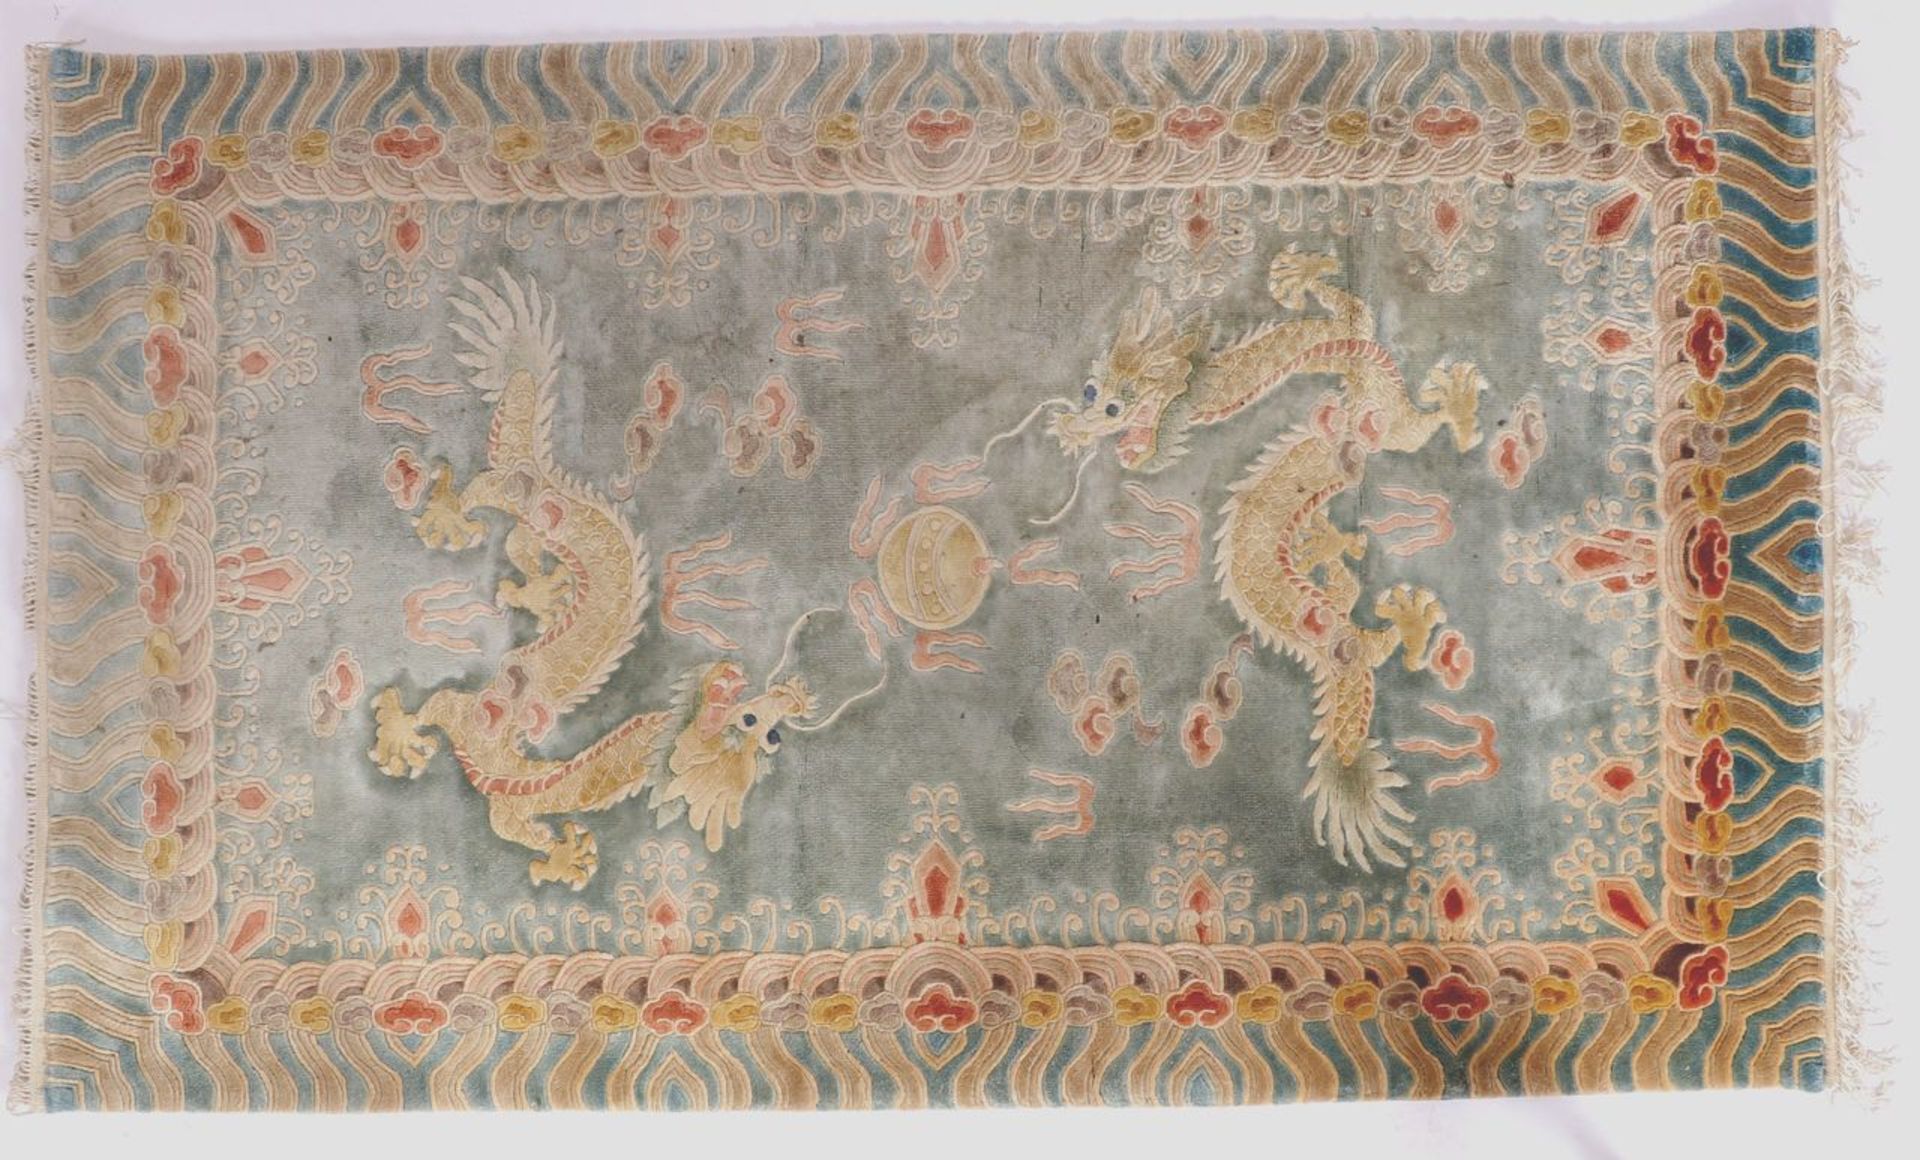 Teppich ChinaWolle, heller Grund mit Drachenmuster, 160 x 92 cm.